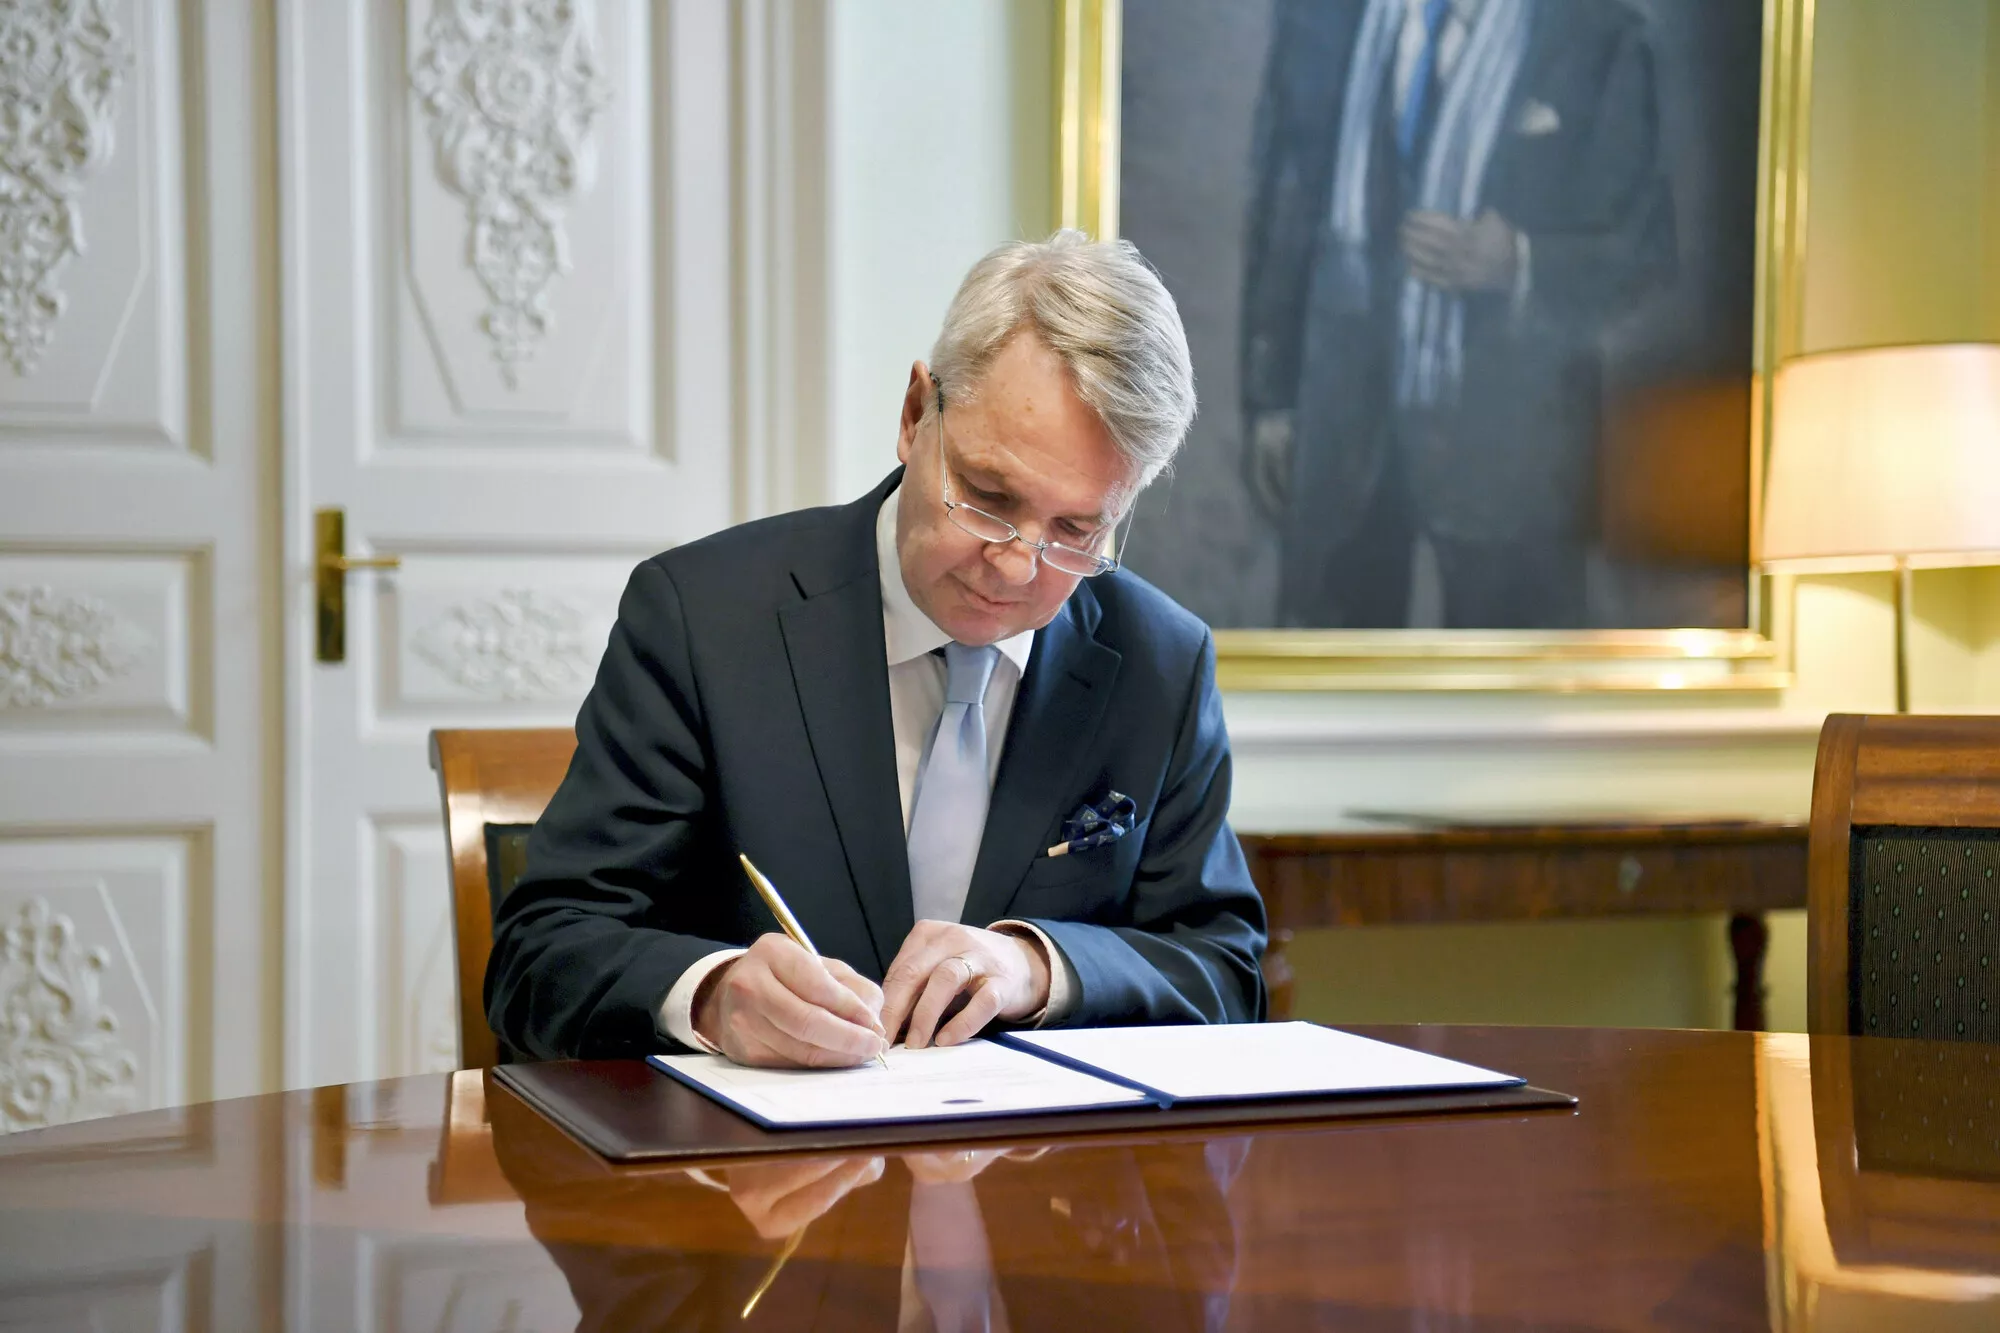 Ulkoministeri Pekka Haavisto allekirjoitti Suomen jäsenhakemuksen Pohjois-Atlantin liittoon (Nato) 17. toukokuuta 2022.